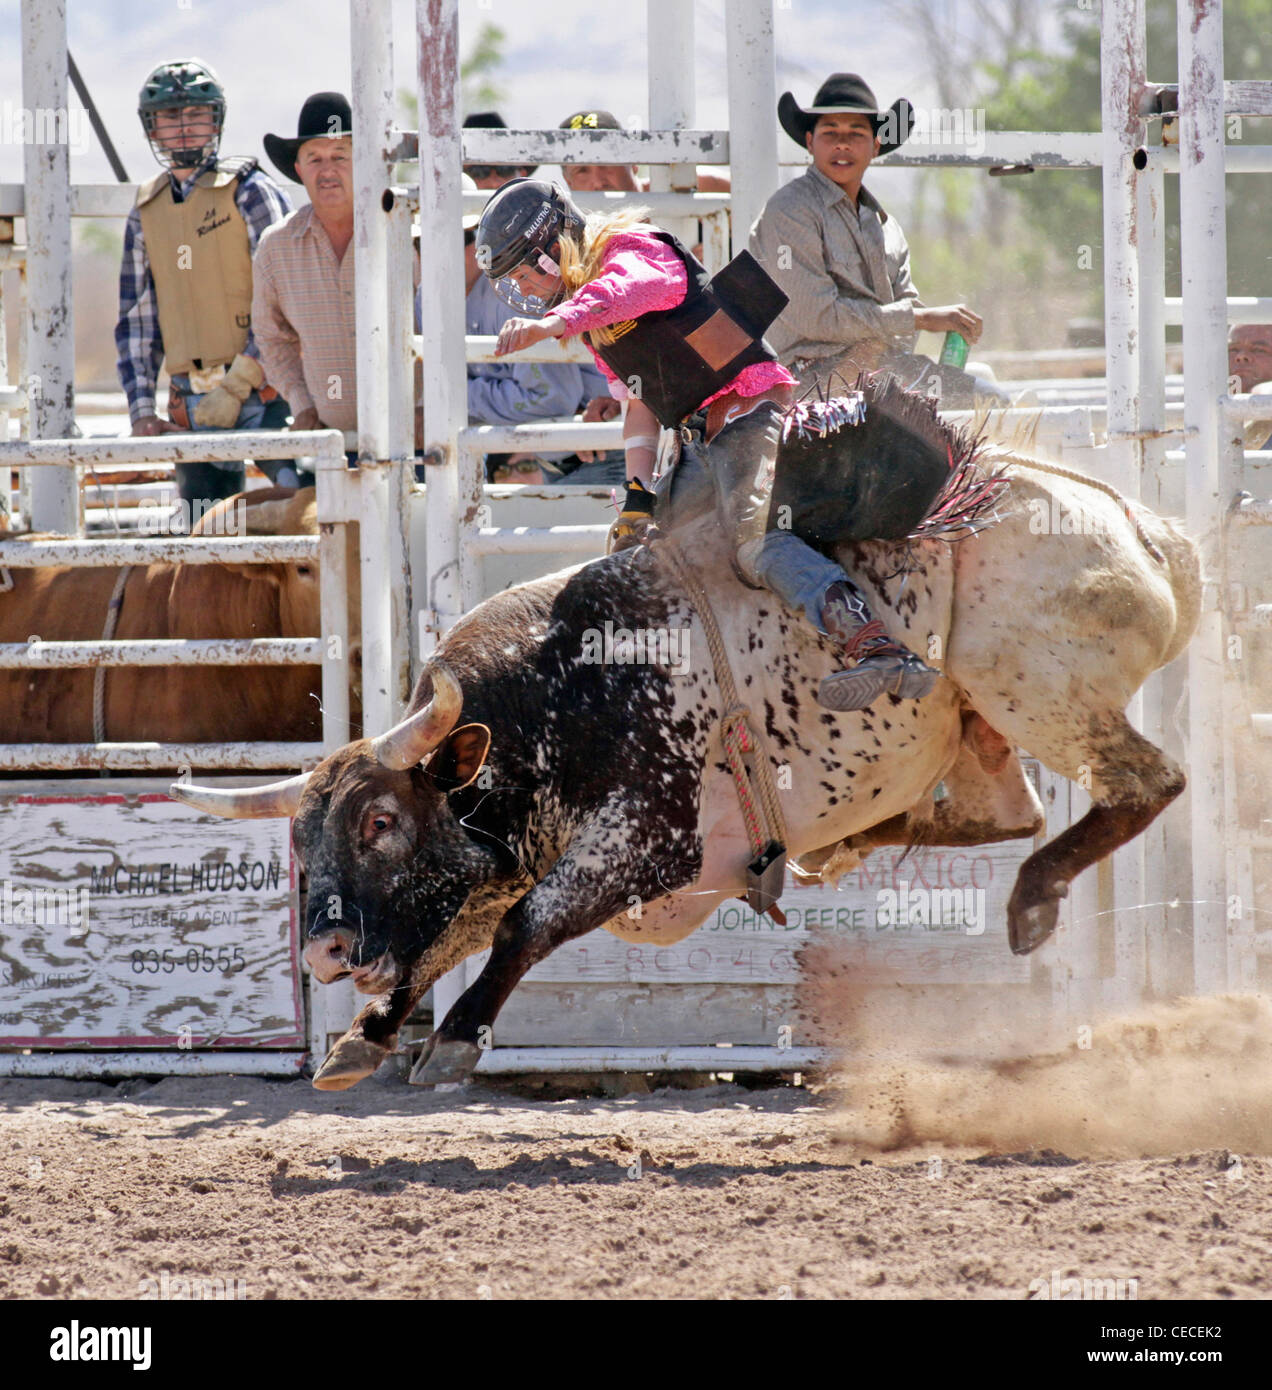 Socorro, Nuovo Messico, Stati Uniti d'America. Donna prendendo parte al toro di equitazione concorrenza durante il rodeo annuale. Foto Stock